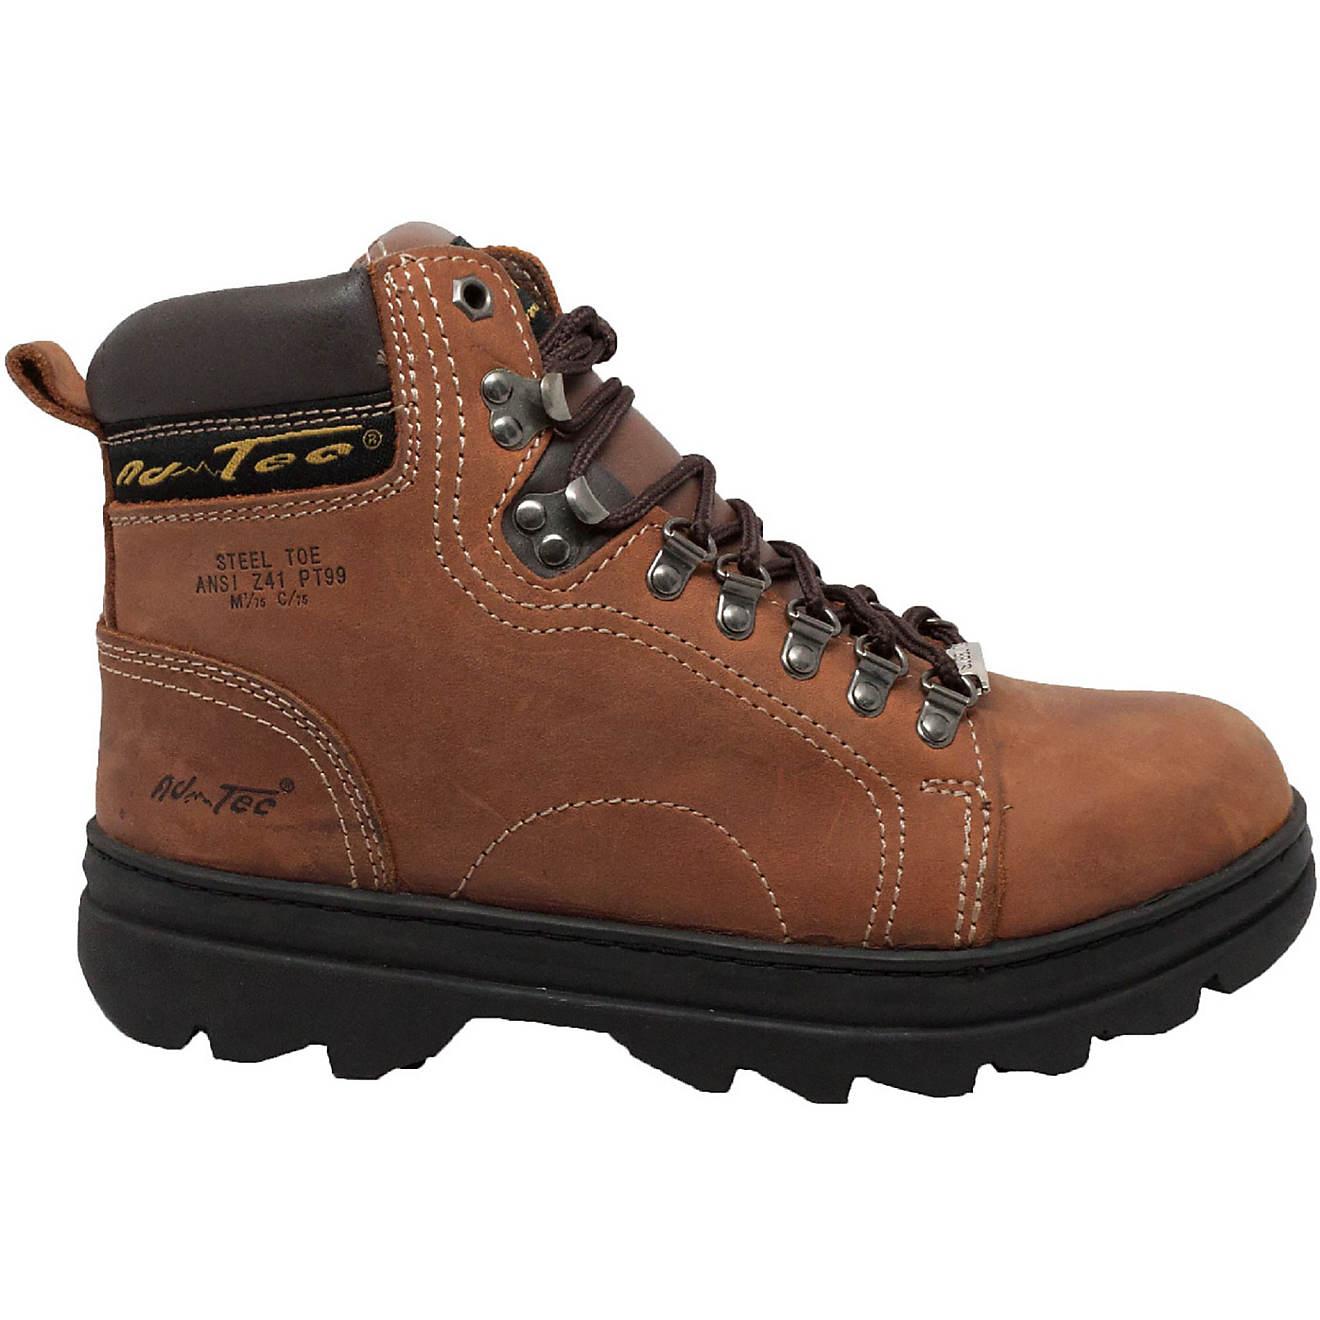 AdTec Men’s 6 in Steel Toe Hiker Boots                                                                                         - view number 1